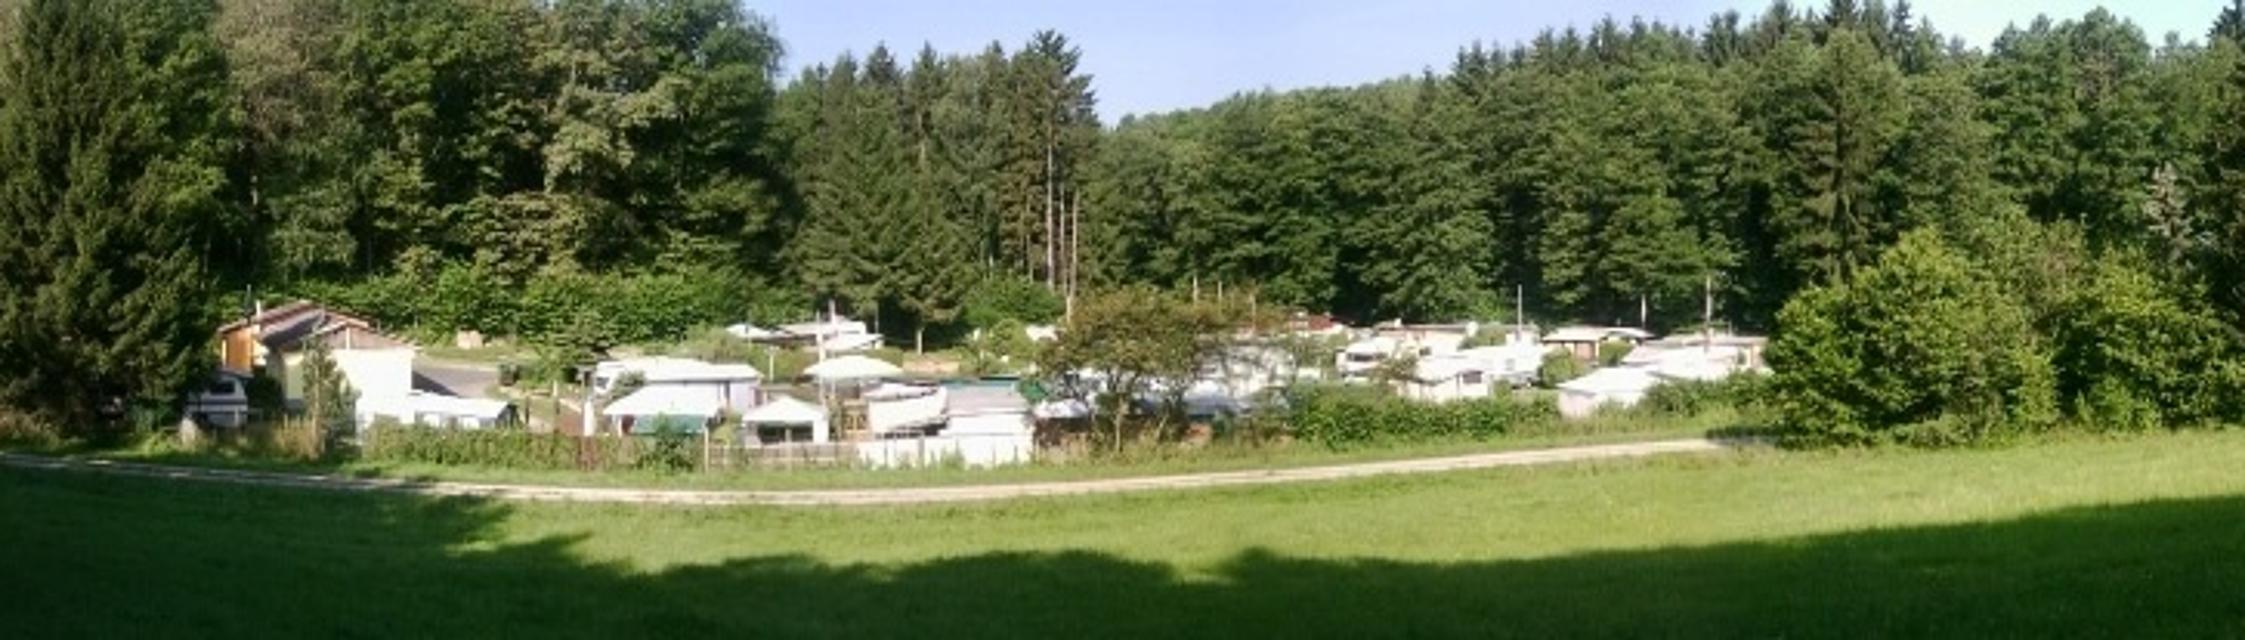 Der naturbelassene Campingplatz liegt in unmittelbarer Nähe zum Ellertshäuser See und bietet mit einer Fläche von 15.000 qm auch genug Platz für Wohnmobile.